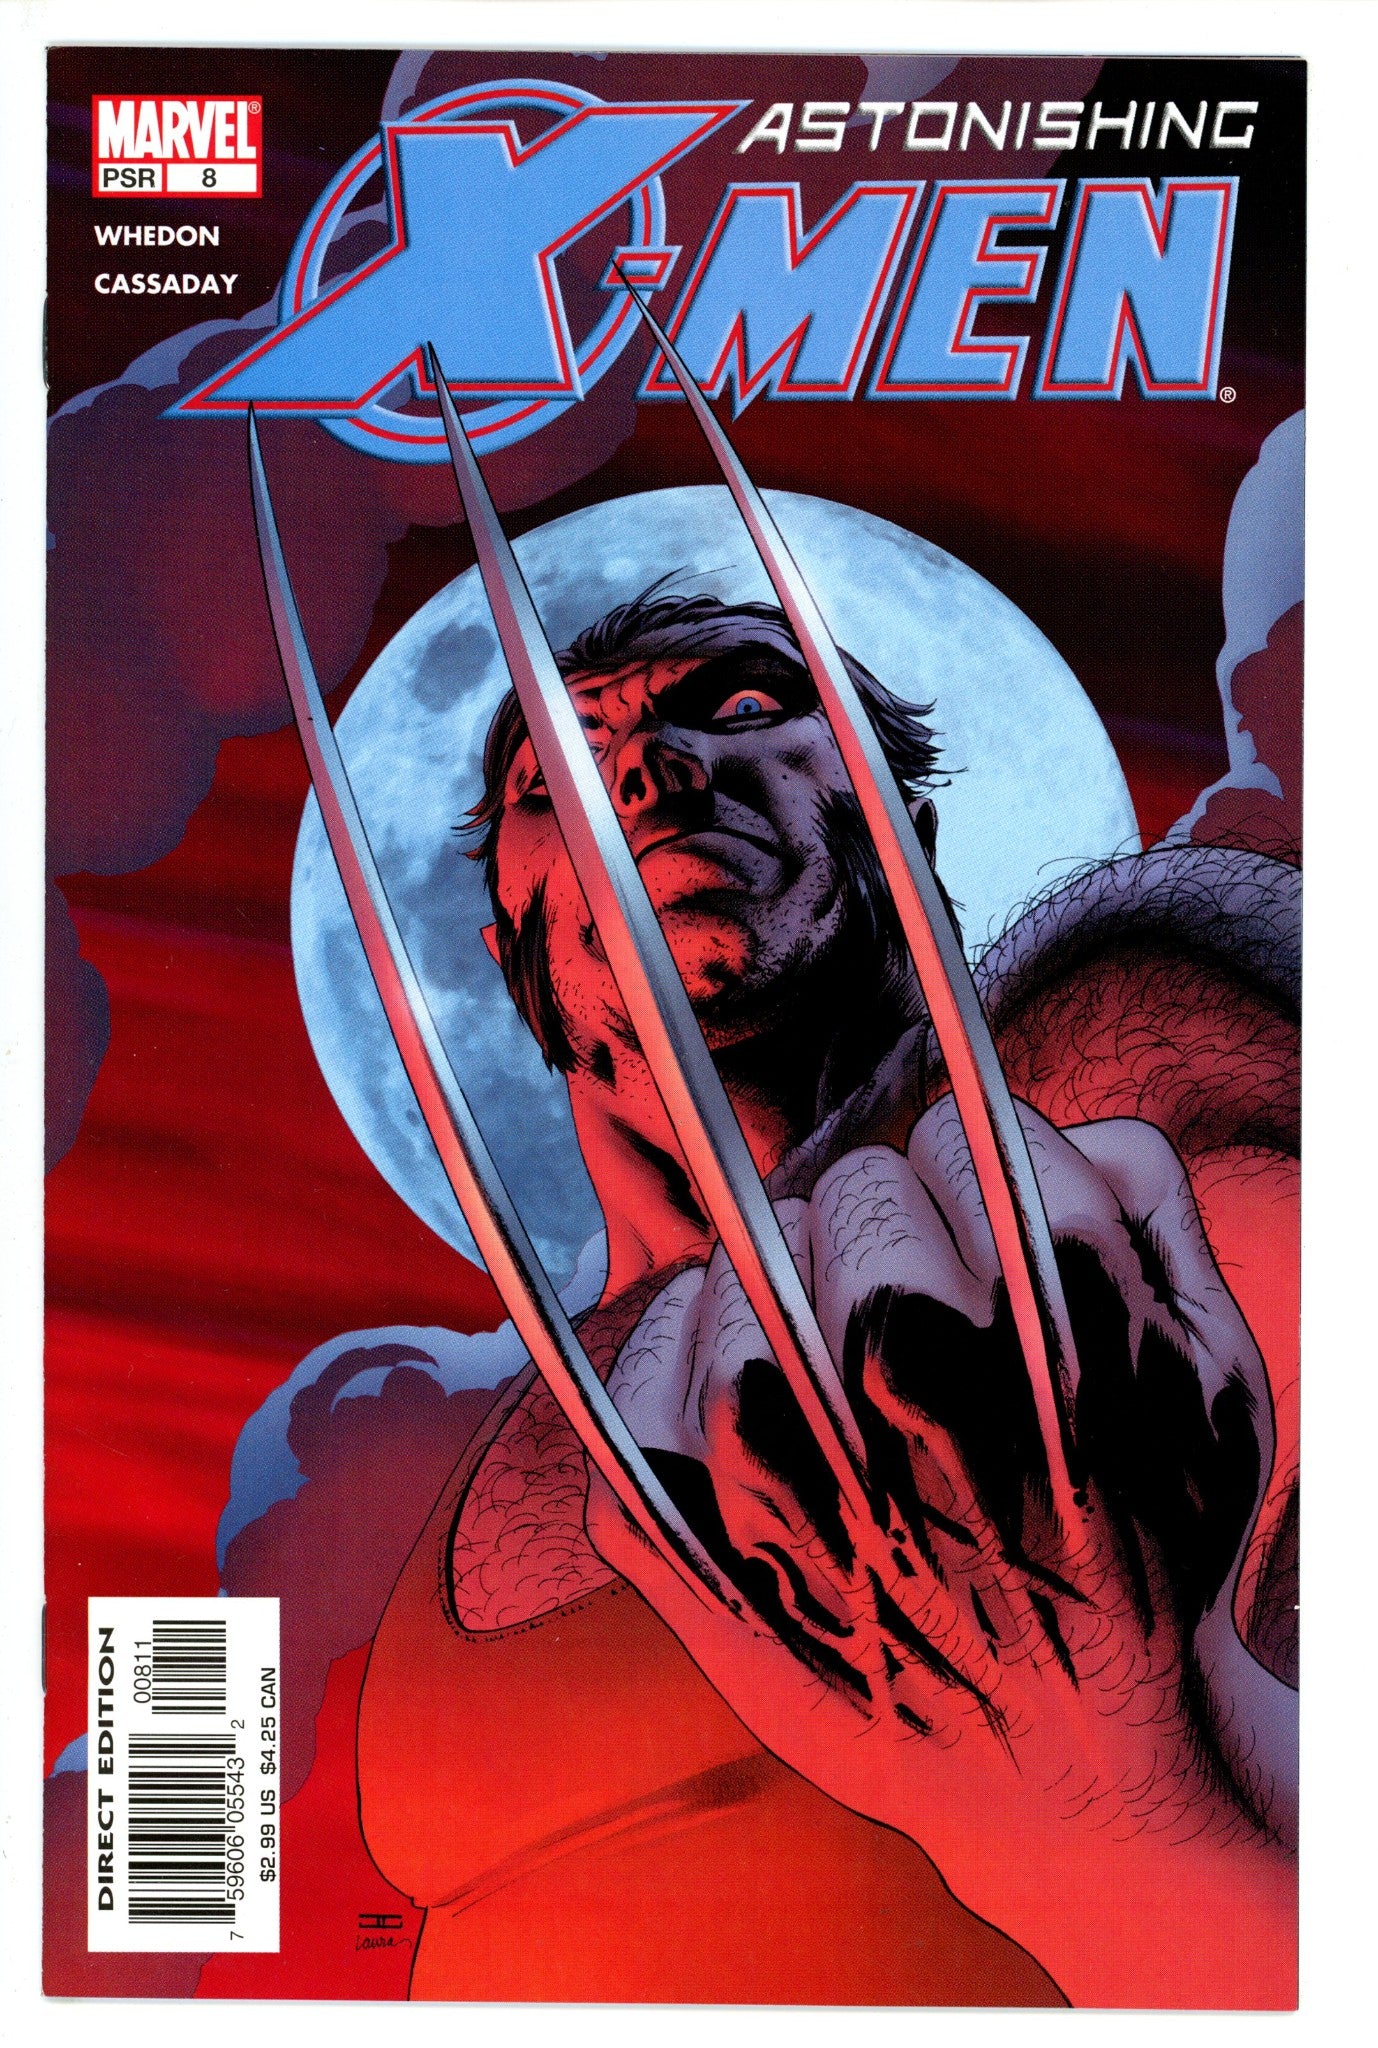 Astonishing X-Men Vol 3 8 (2005)